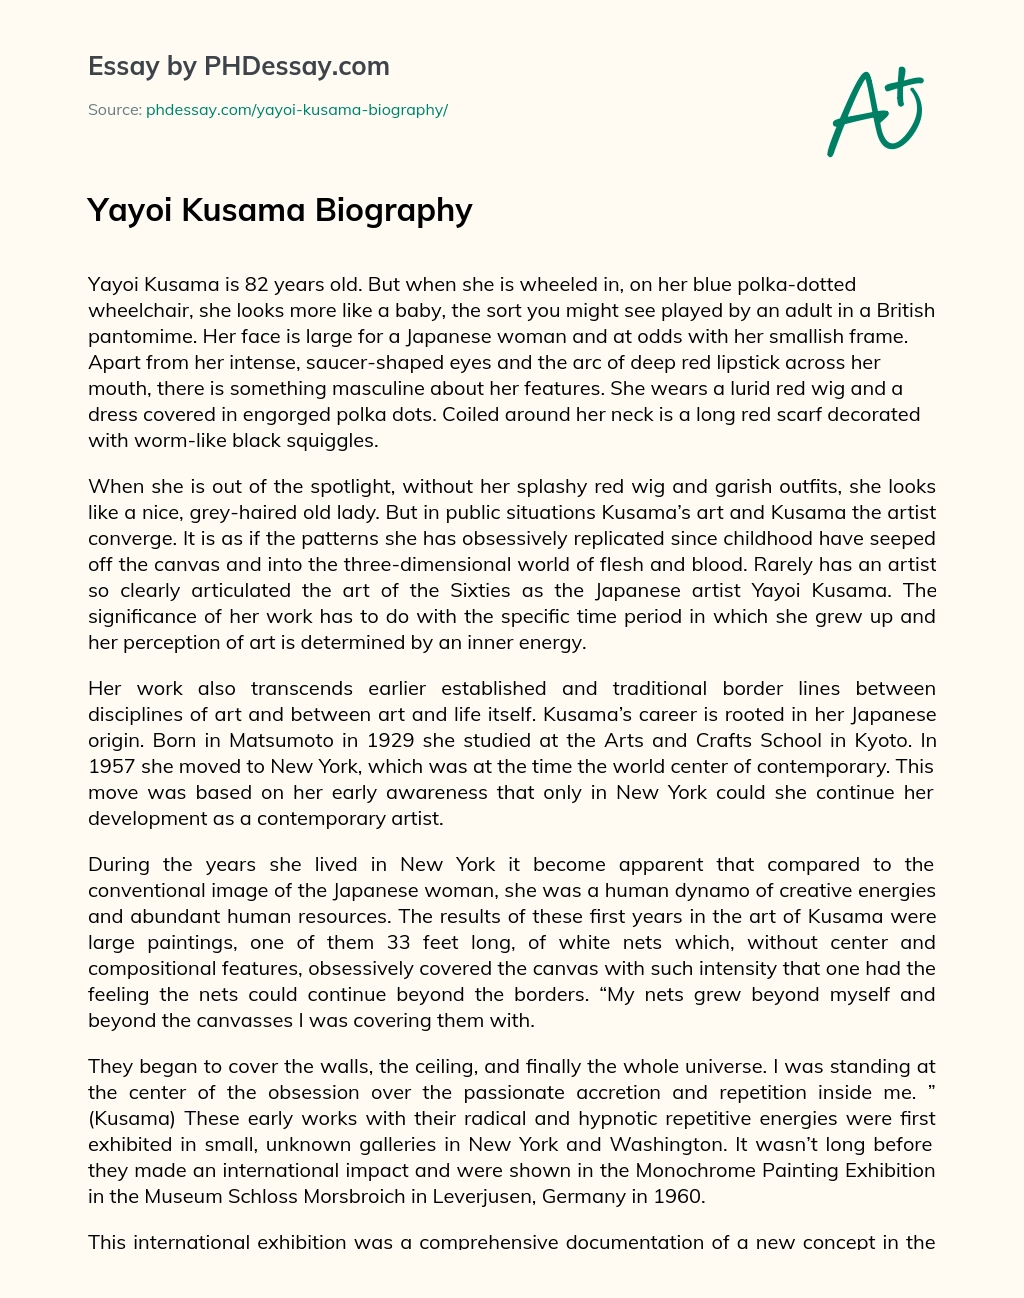 Yayoi Kusama Biography essay